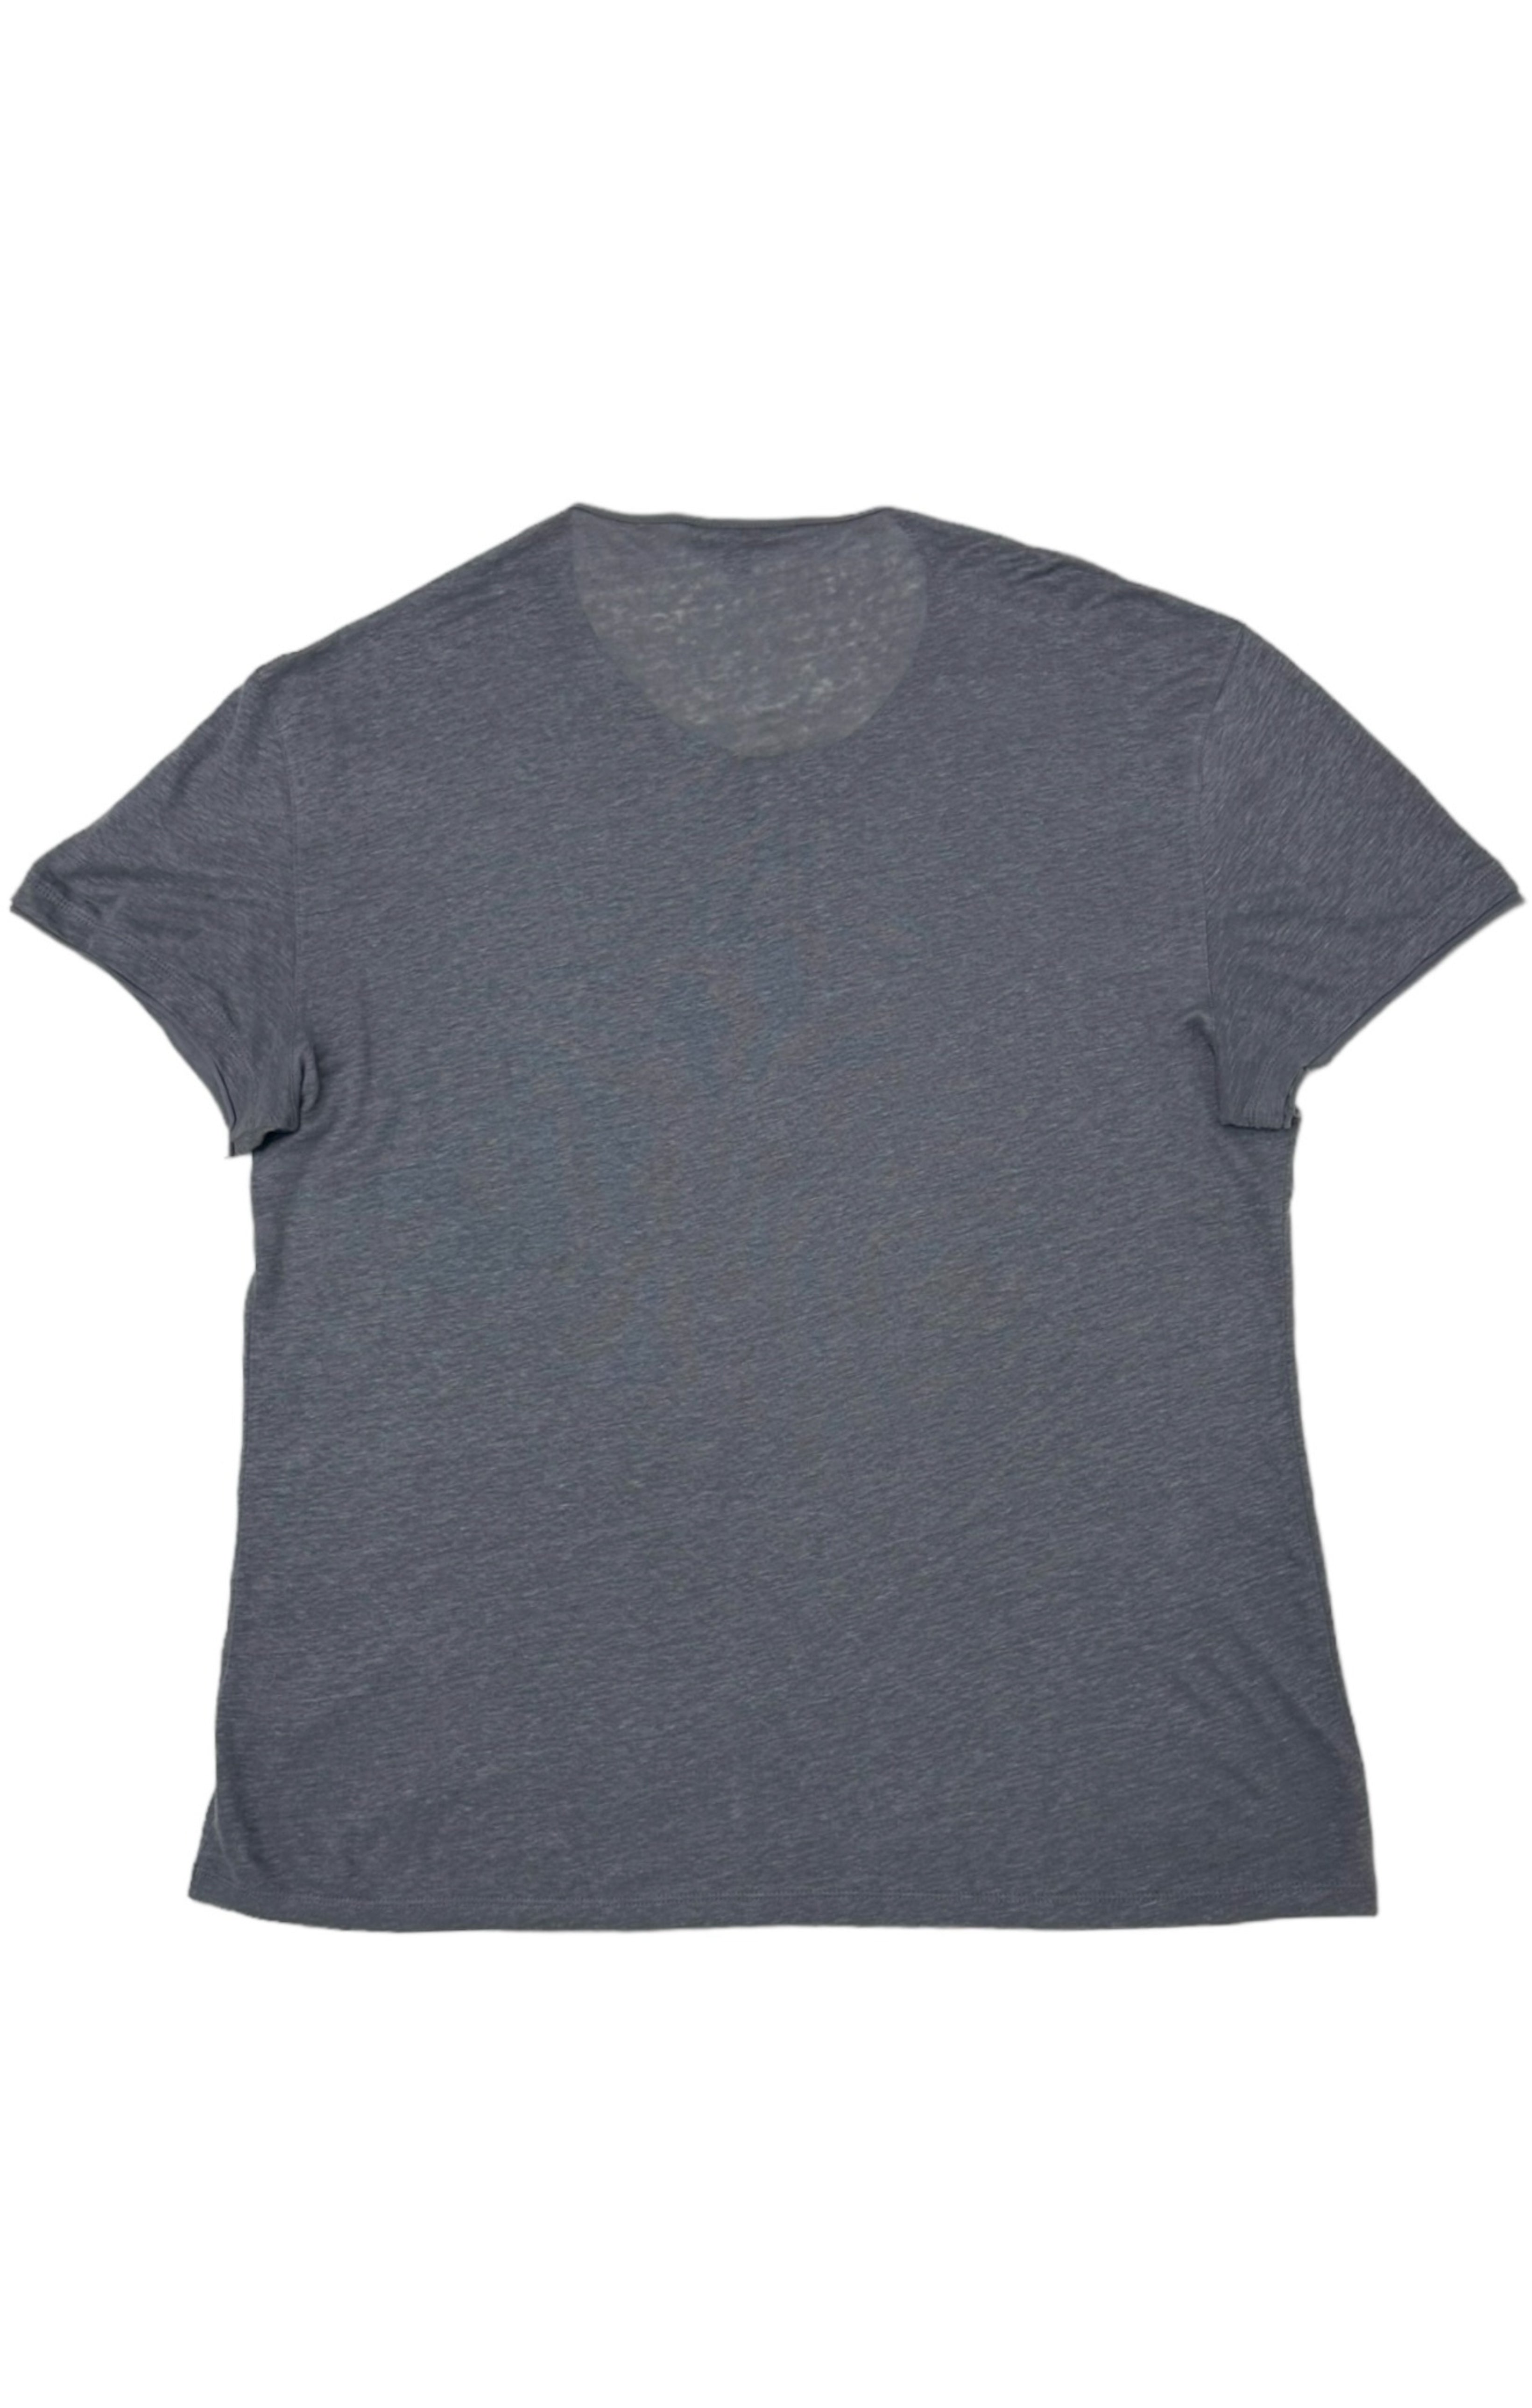 JOHN VARVATOS Shirt Size: XL